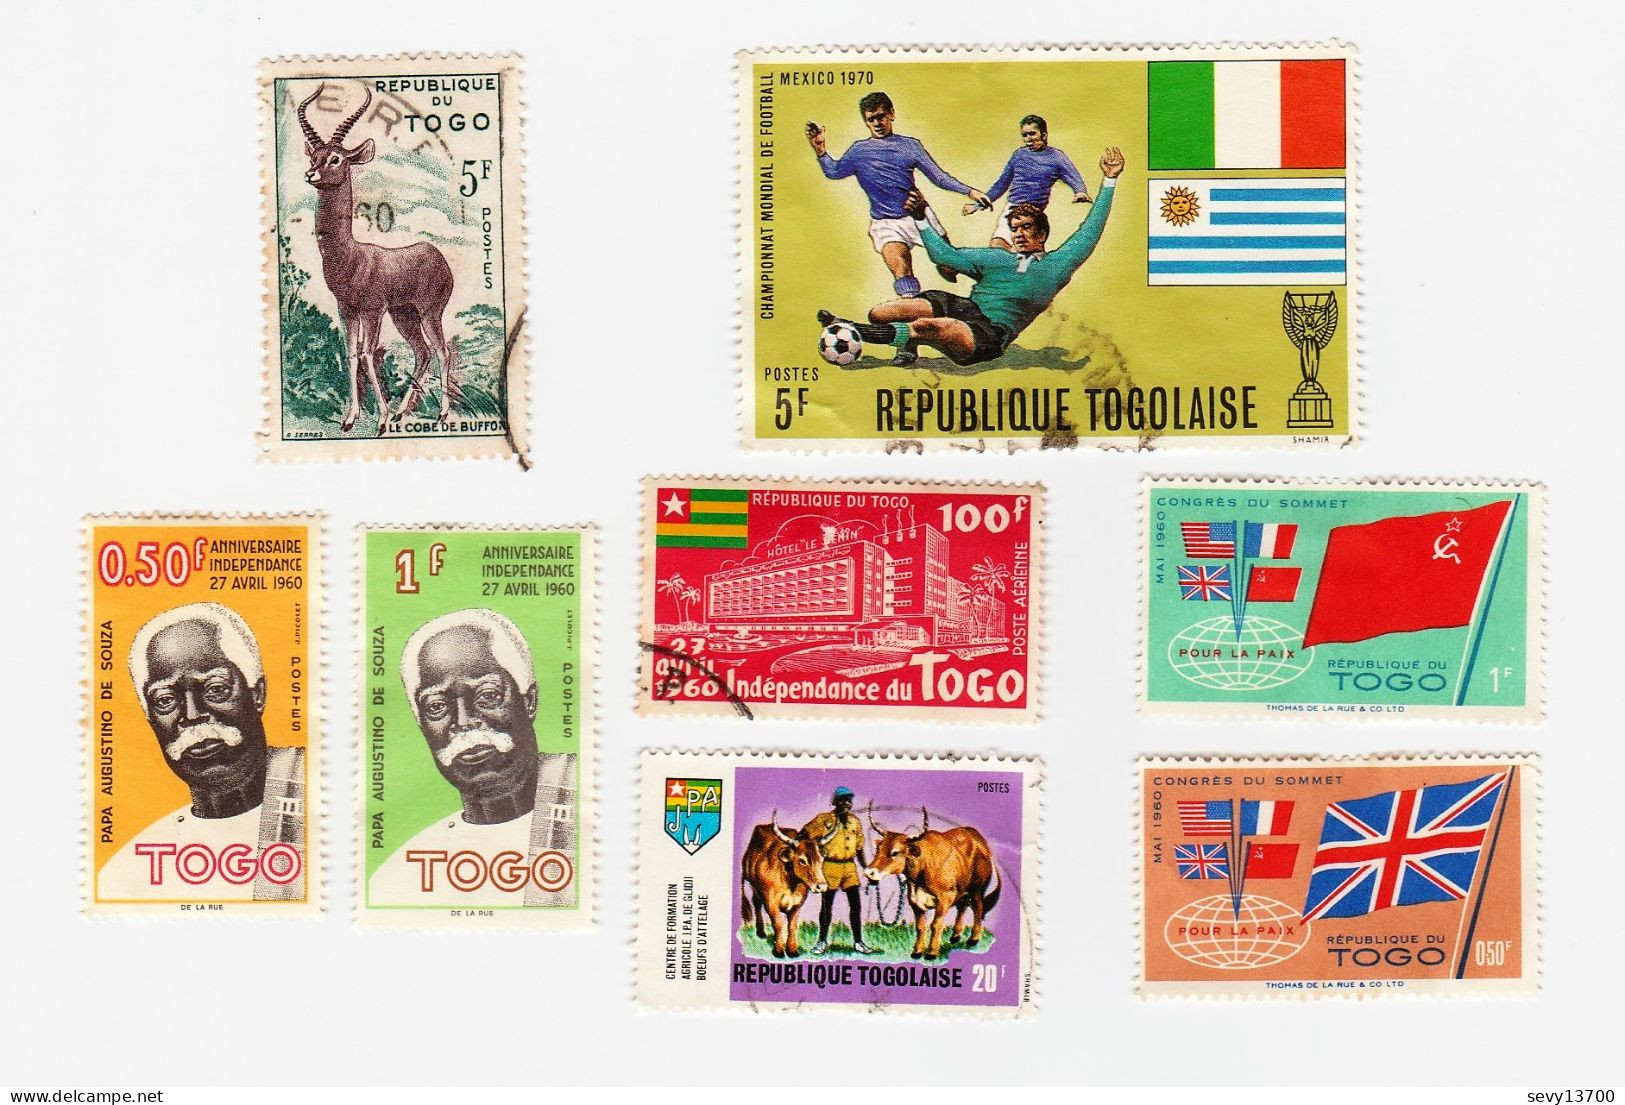 Togo lot de 46 timbres